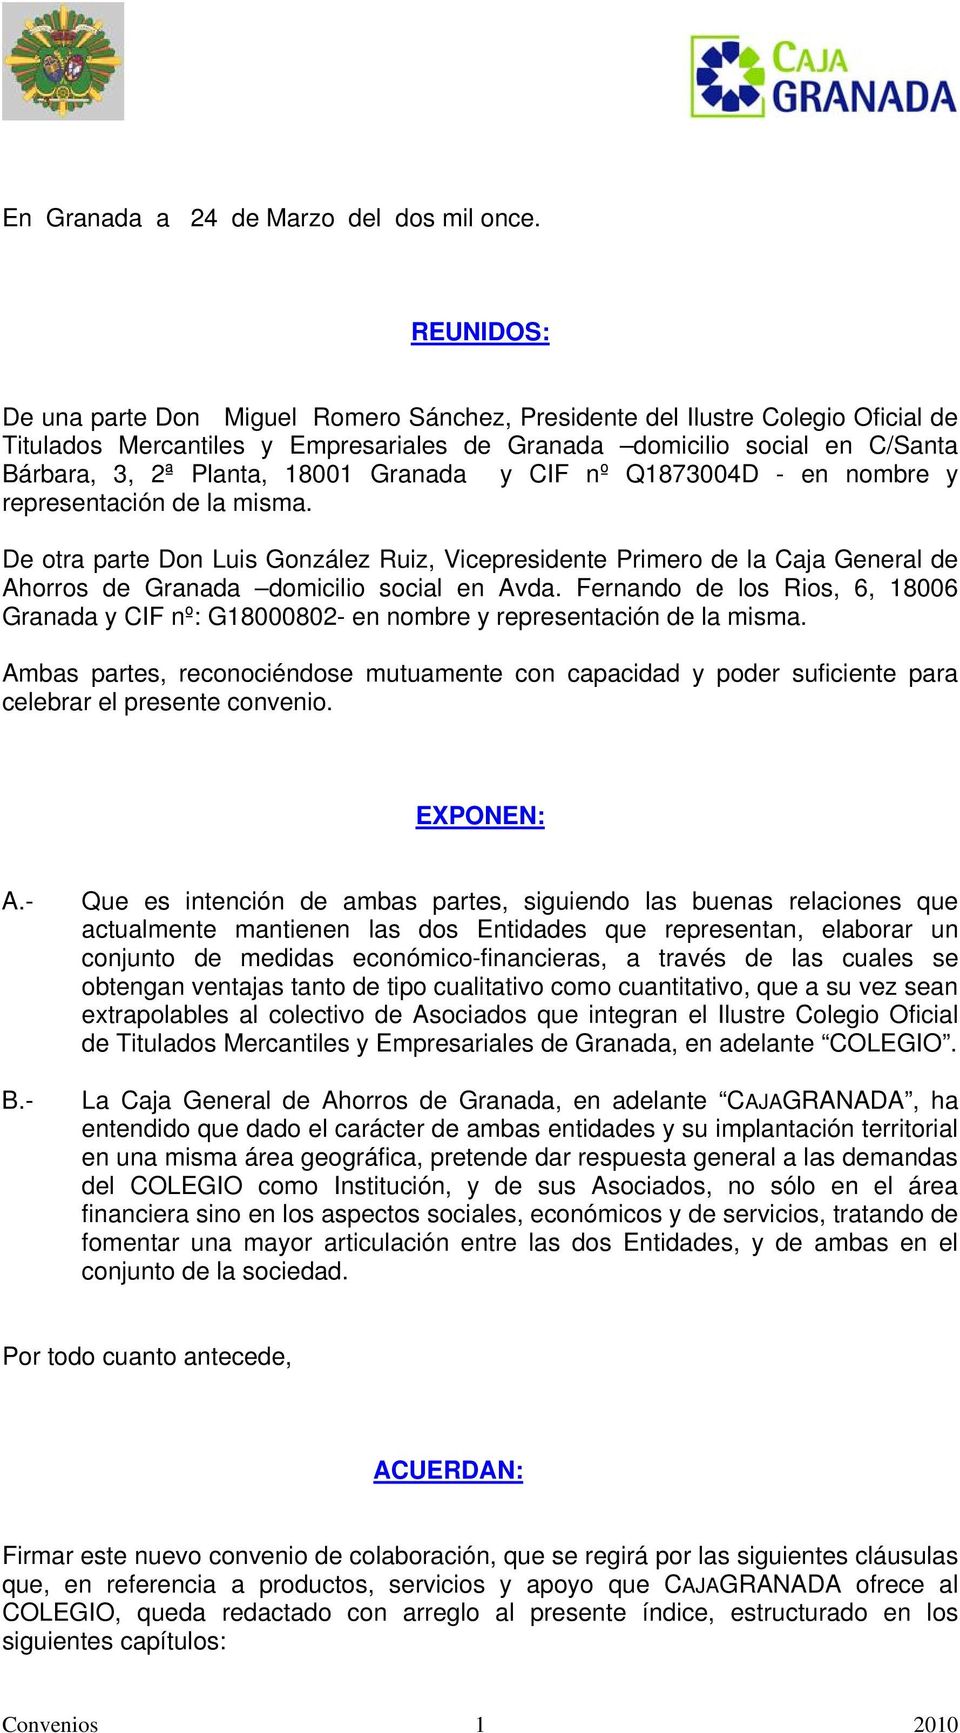 Granada y CIF nº Q1873004D - en nombre y representación de la misma. De otra parte Don Luis González Ruiz, Vicepresidente Primero de la Caja General de Ahorros de Granada domicilio social en Avda.